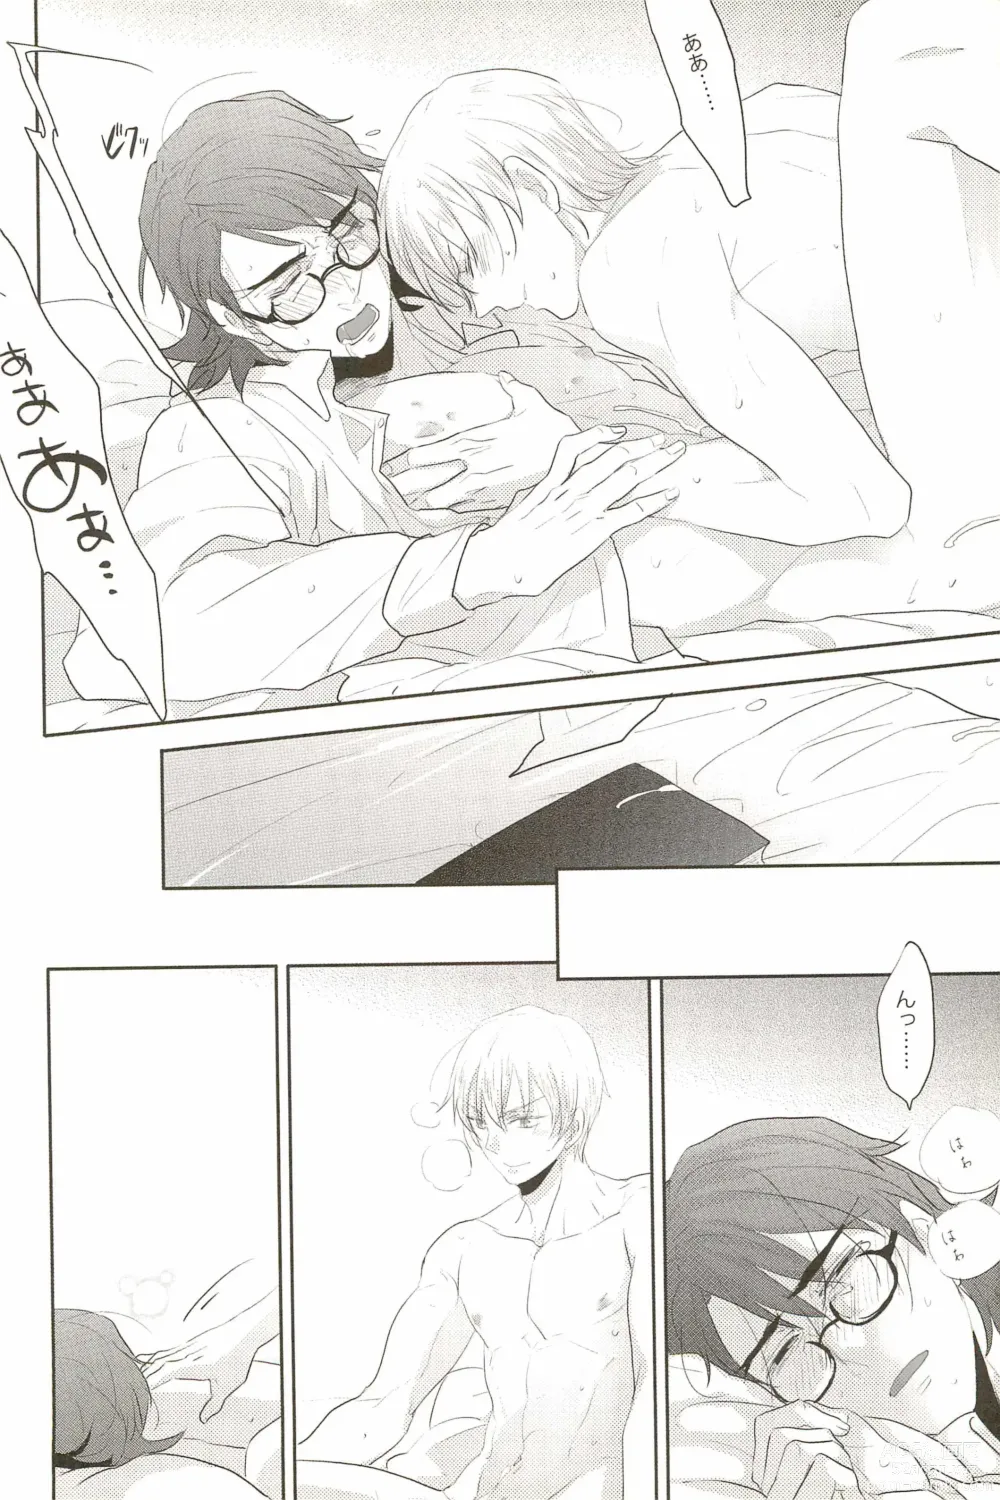 Page 26 of doujinshi Warera Dosei Shite Iru.